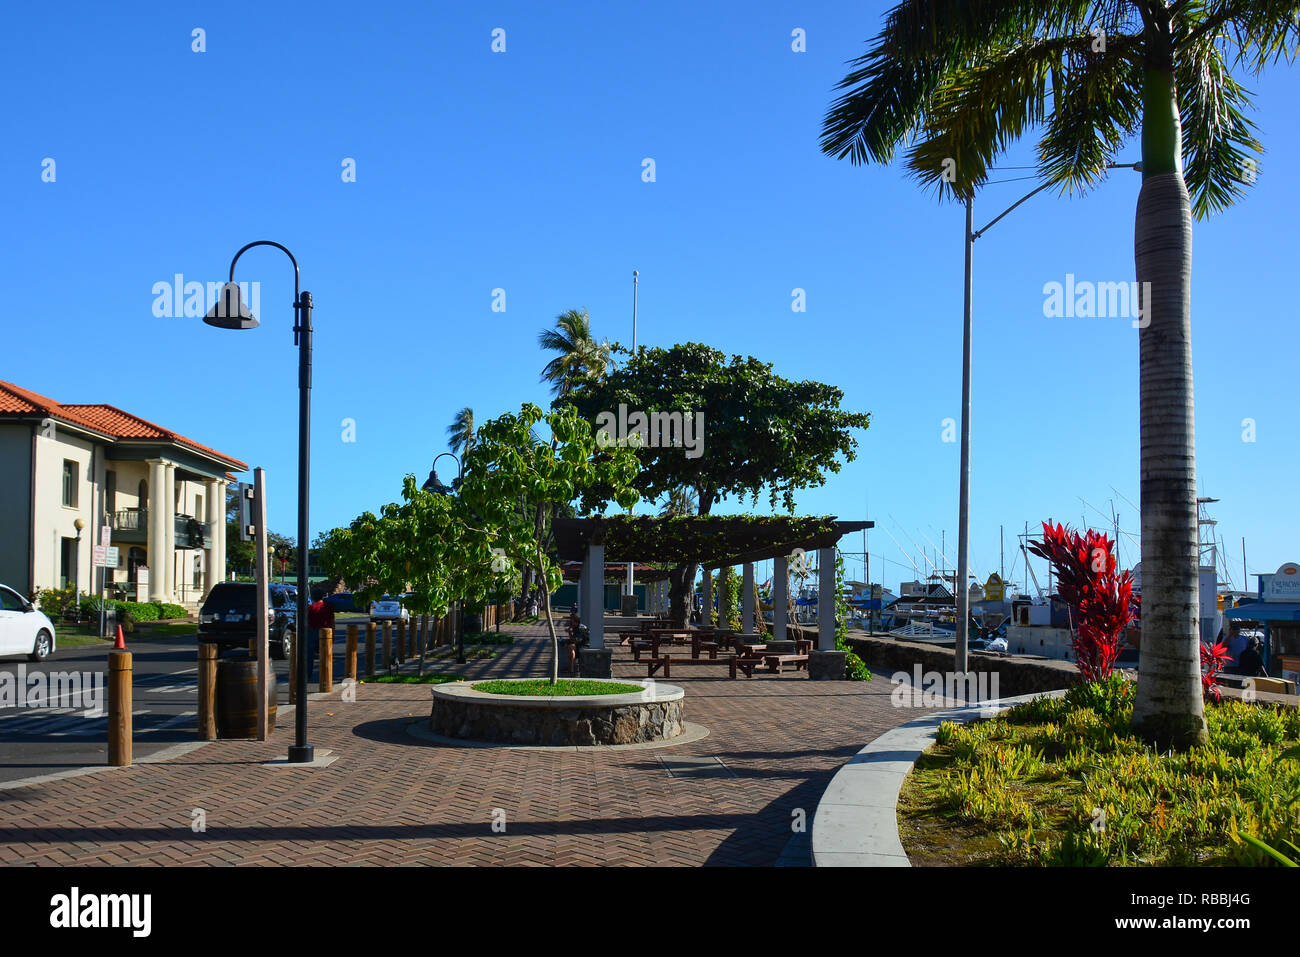 Histórico de Lahaina, Maui, primera capital de las islas hawaianas y antigua aldea ballenera. Foto de stock